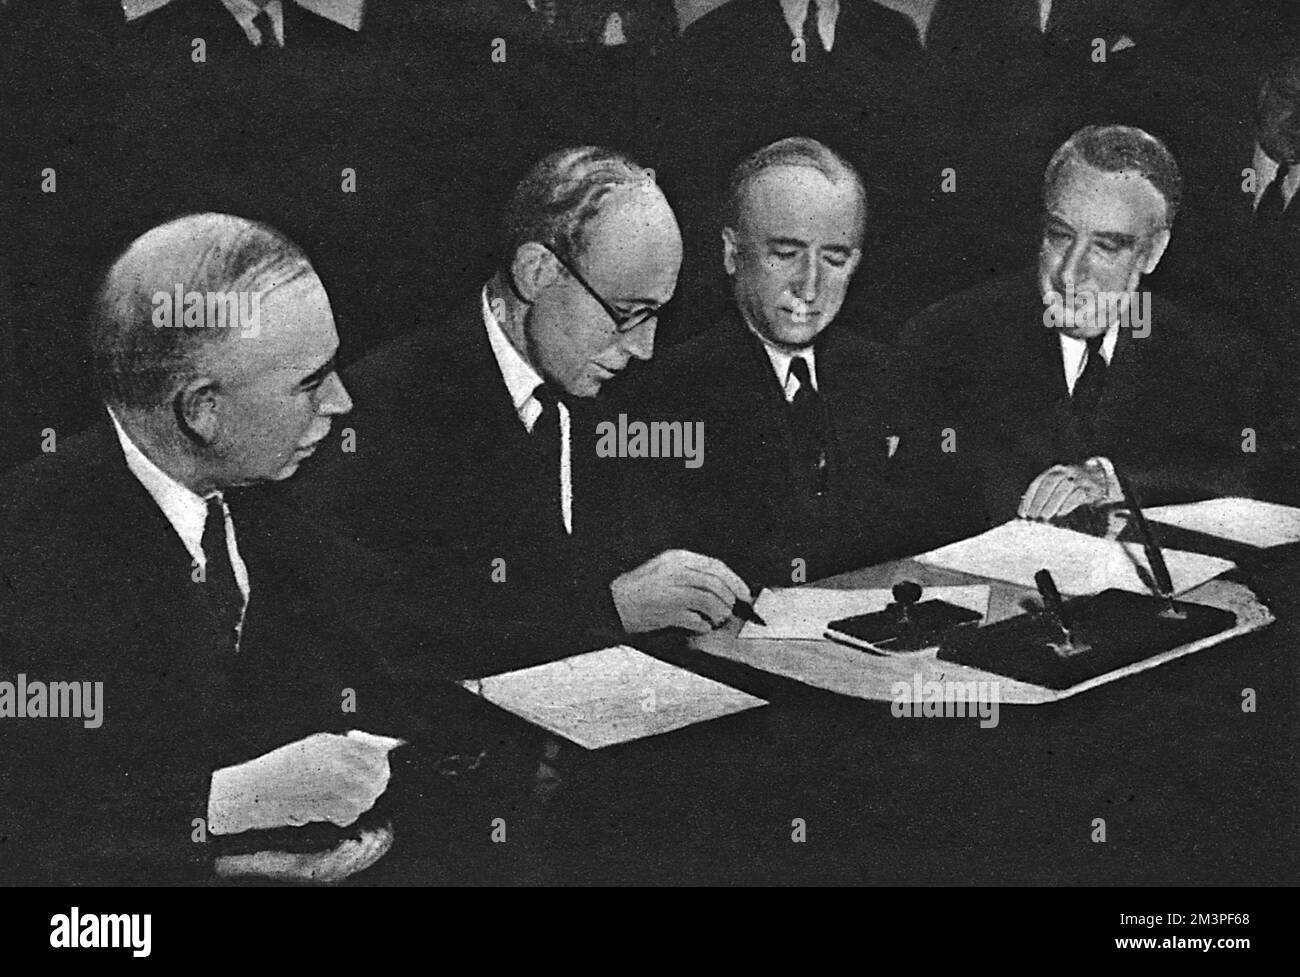 La firma dell'accordo di prestito anglo-americano a Washington D.C. il 6 dicembre 1945 dopo dodici settimane di negoziato. Da sinistra a destra: Lord (John Maynard) Keynes, capo della missione finanziaria britannica; Lord Halifax, ambasciatore britannico; Byrnes, Stati Uniti Segretario di Stato; e il Sig. Vinson, Stati Uniti Segretario del Tesoro. Data: 6 dicembre 1945 Foto Stock